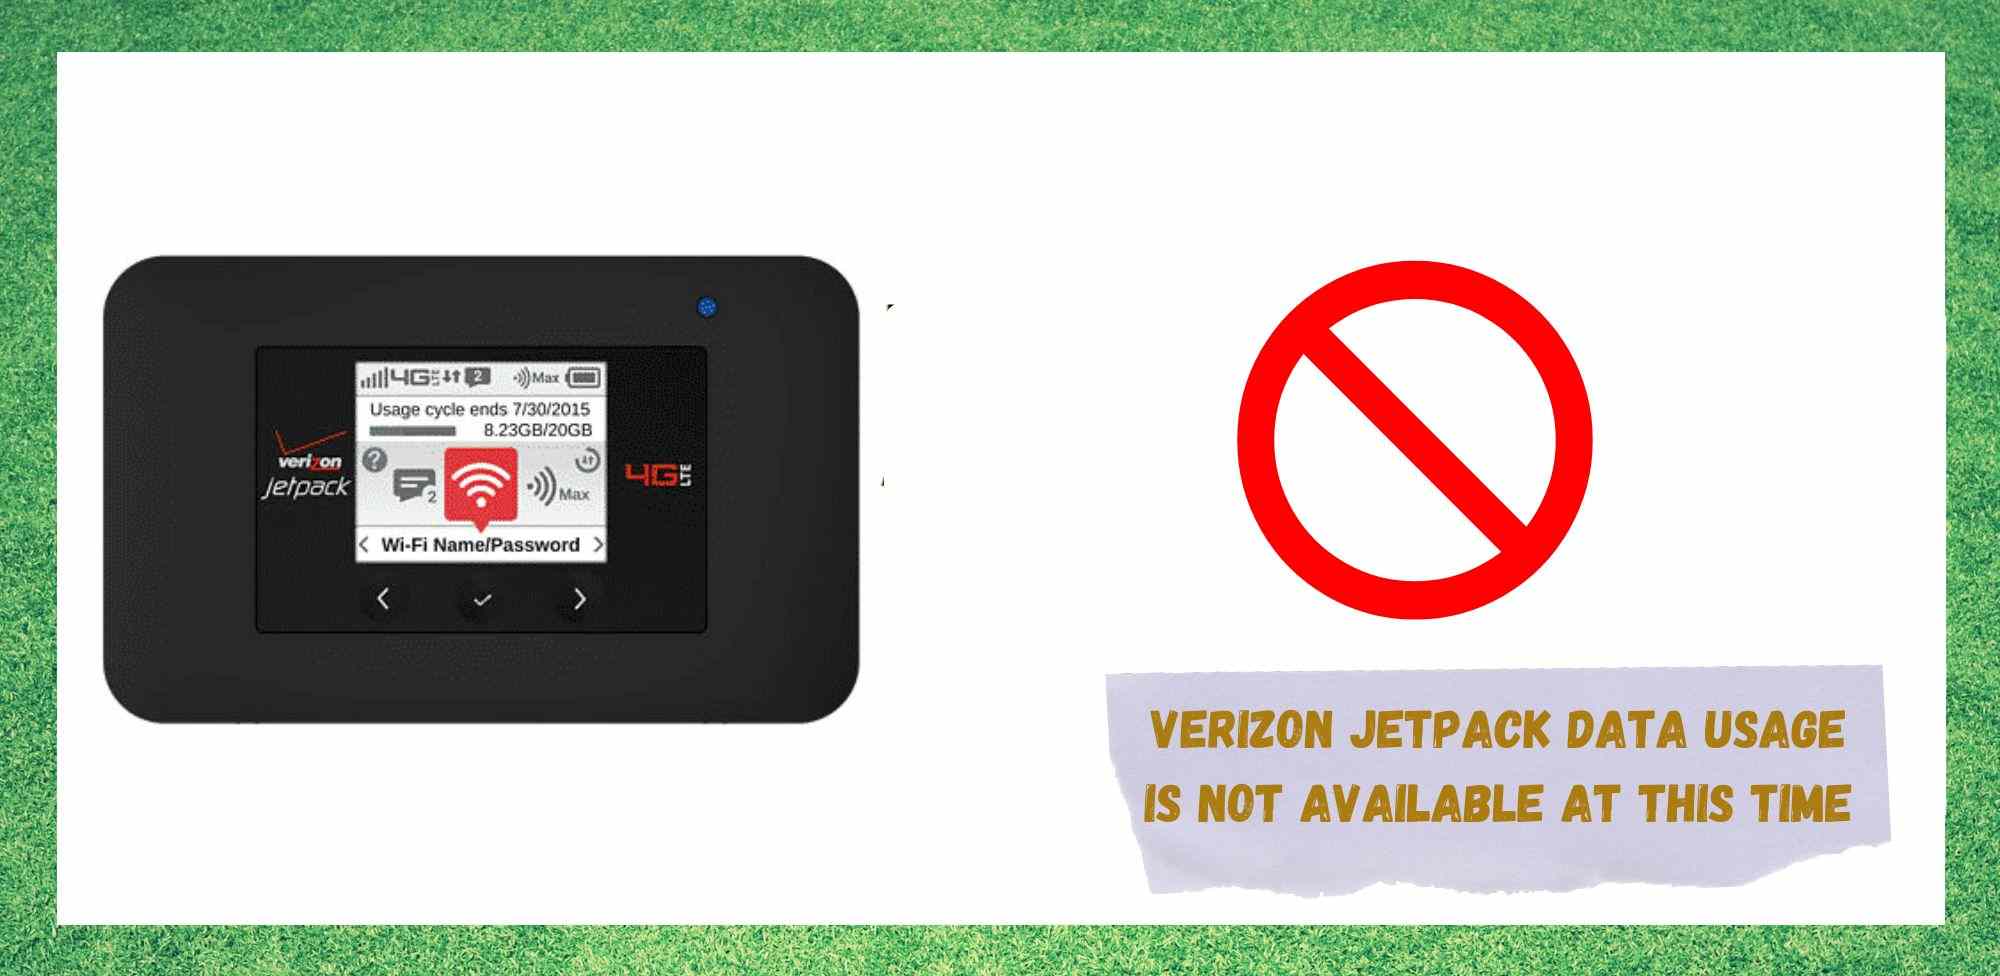 Verizon Jetpack-en datuen erabilera konpontzeko 7 moduak ez daude eskuragarri une honetan